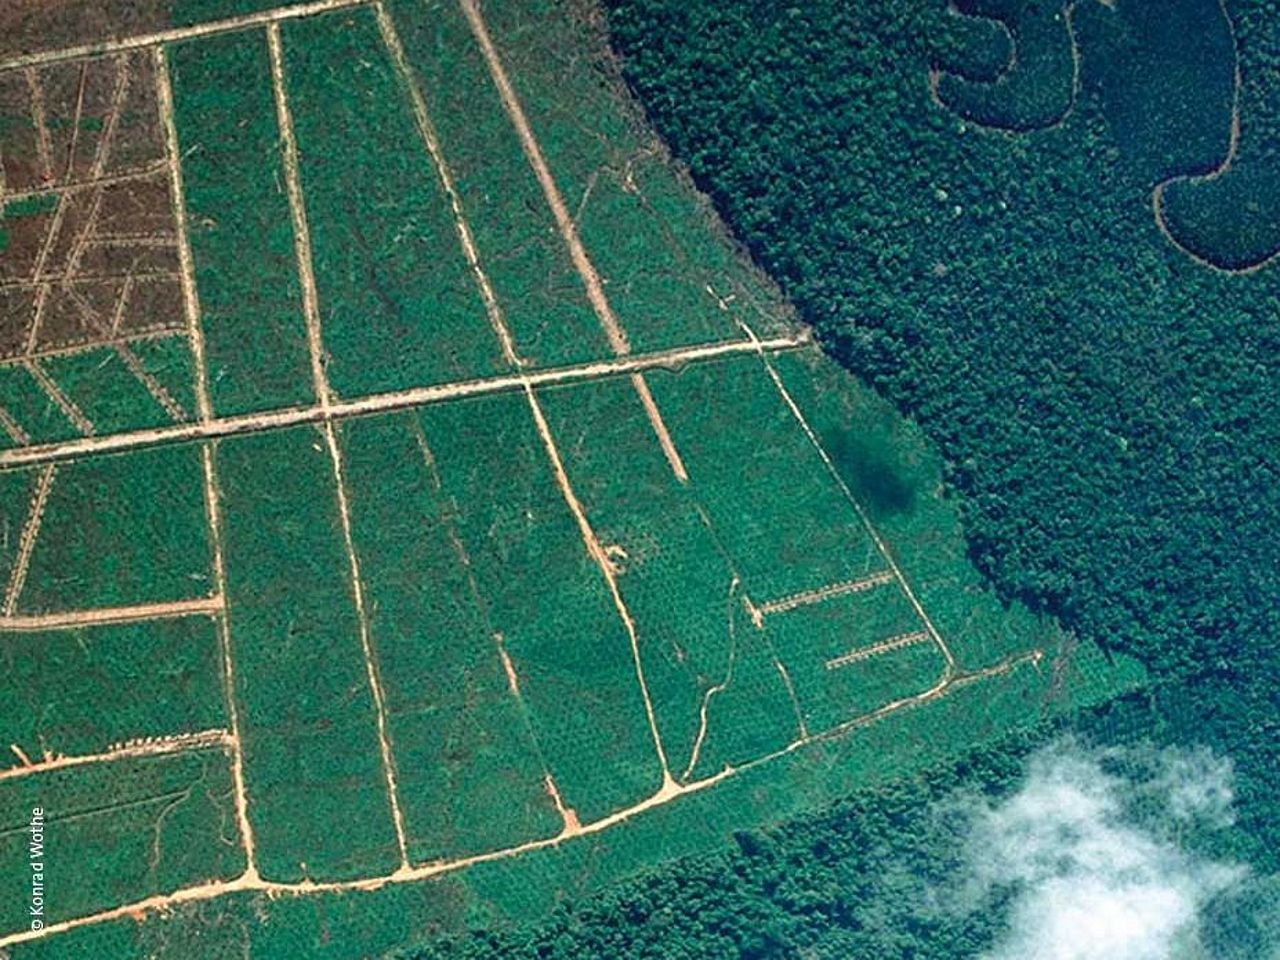 Palmöl-Plantagen dringen immer weiter in den Regenwald vor. ©Konrad Wothe